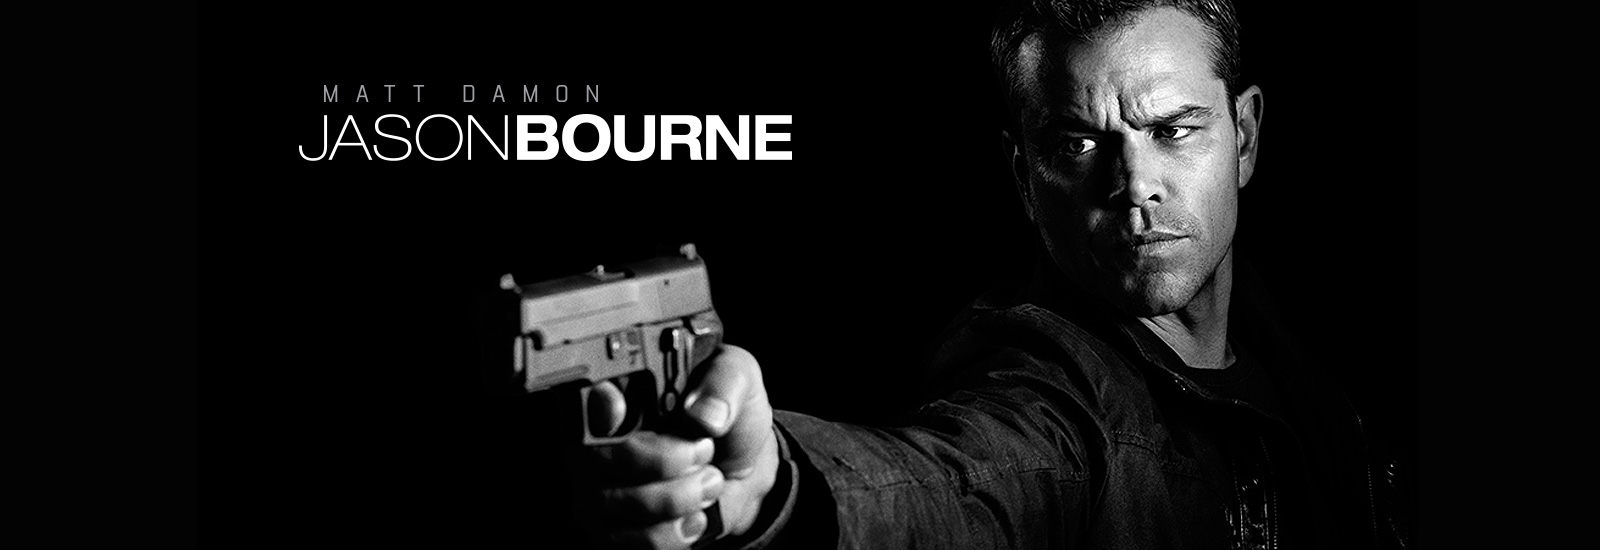 Jason Bourne en Cantones Cines de A Coruña